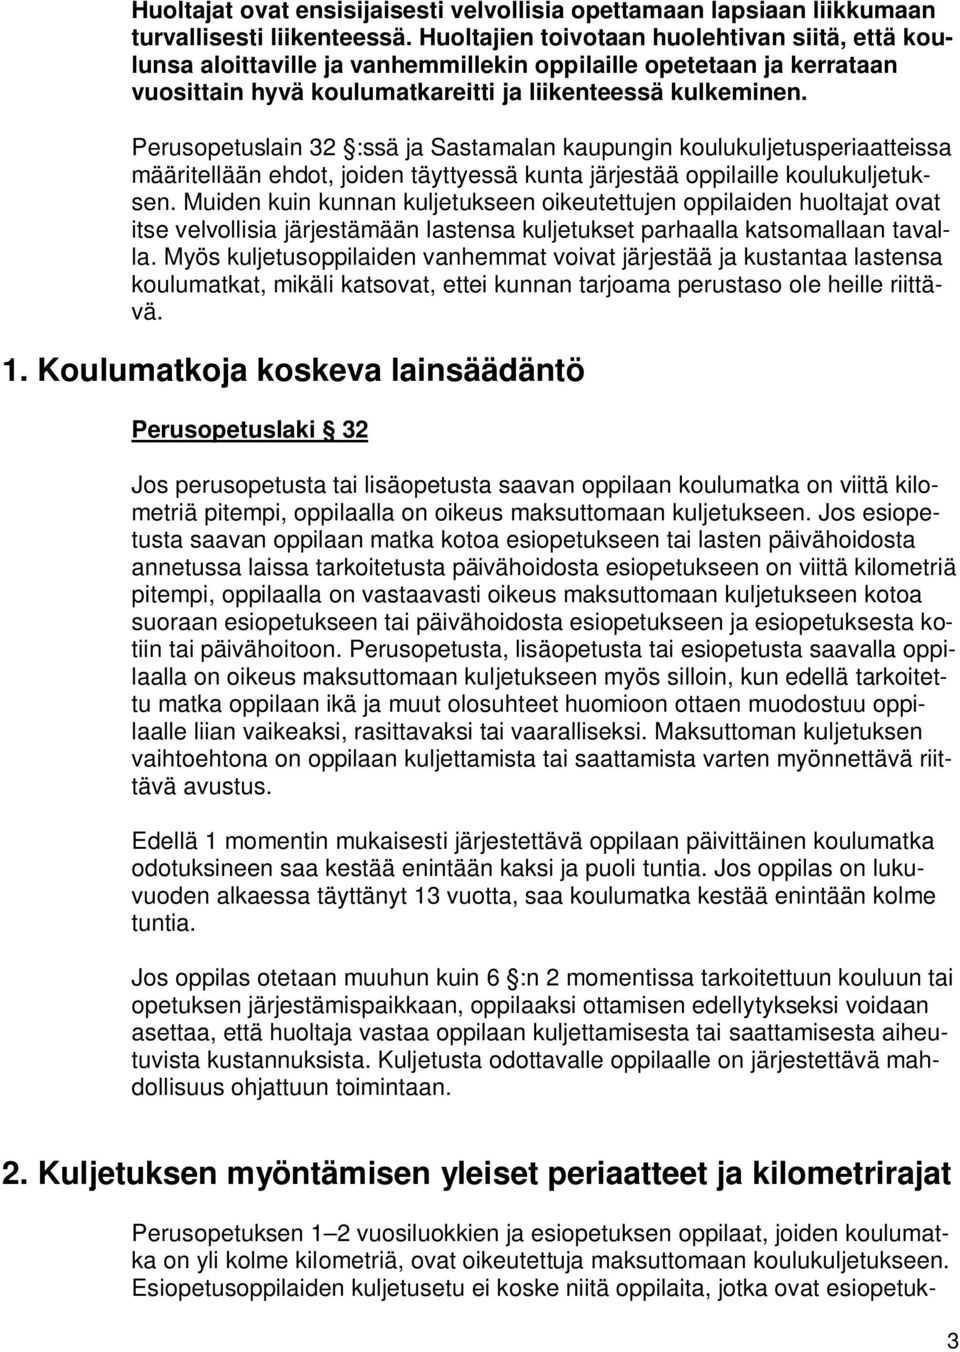 Perusopetuslain 32 :ssä ja Sastamalan kaupungin koulukuljetusperiaatteissa määritellään ehdot, joiden täyttyessä kunta järjestää oppilaille koulukuljetuksen.